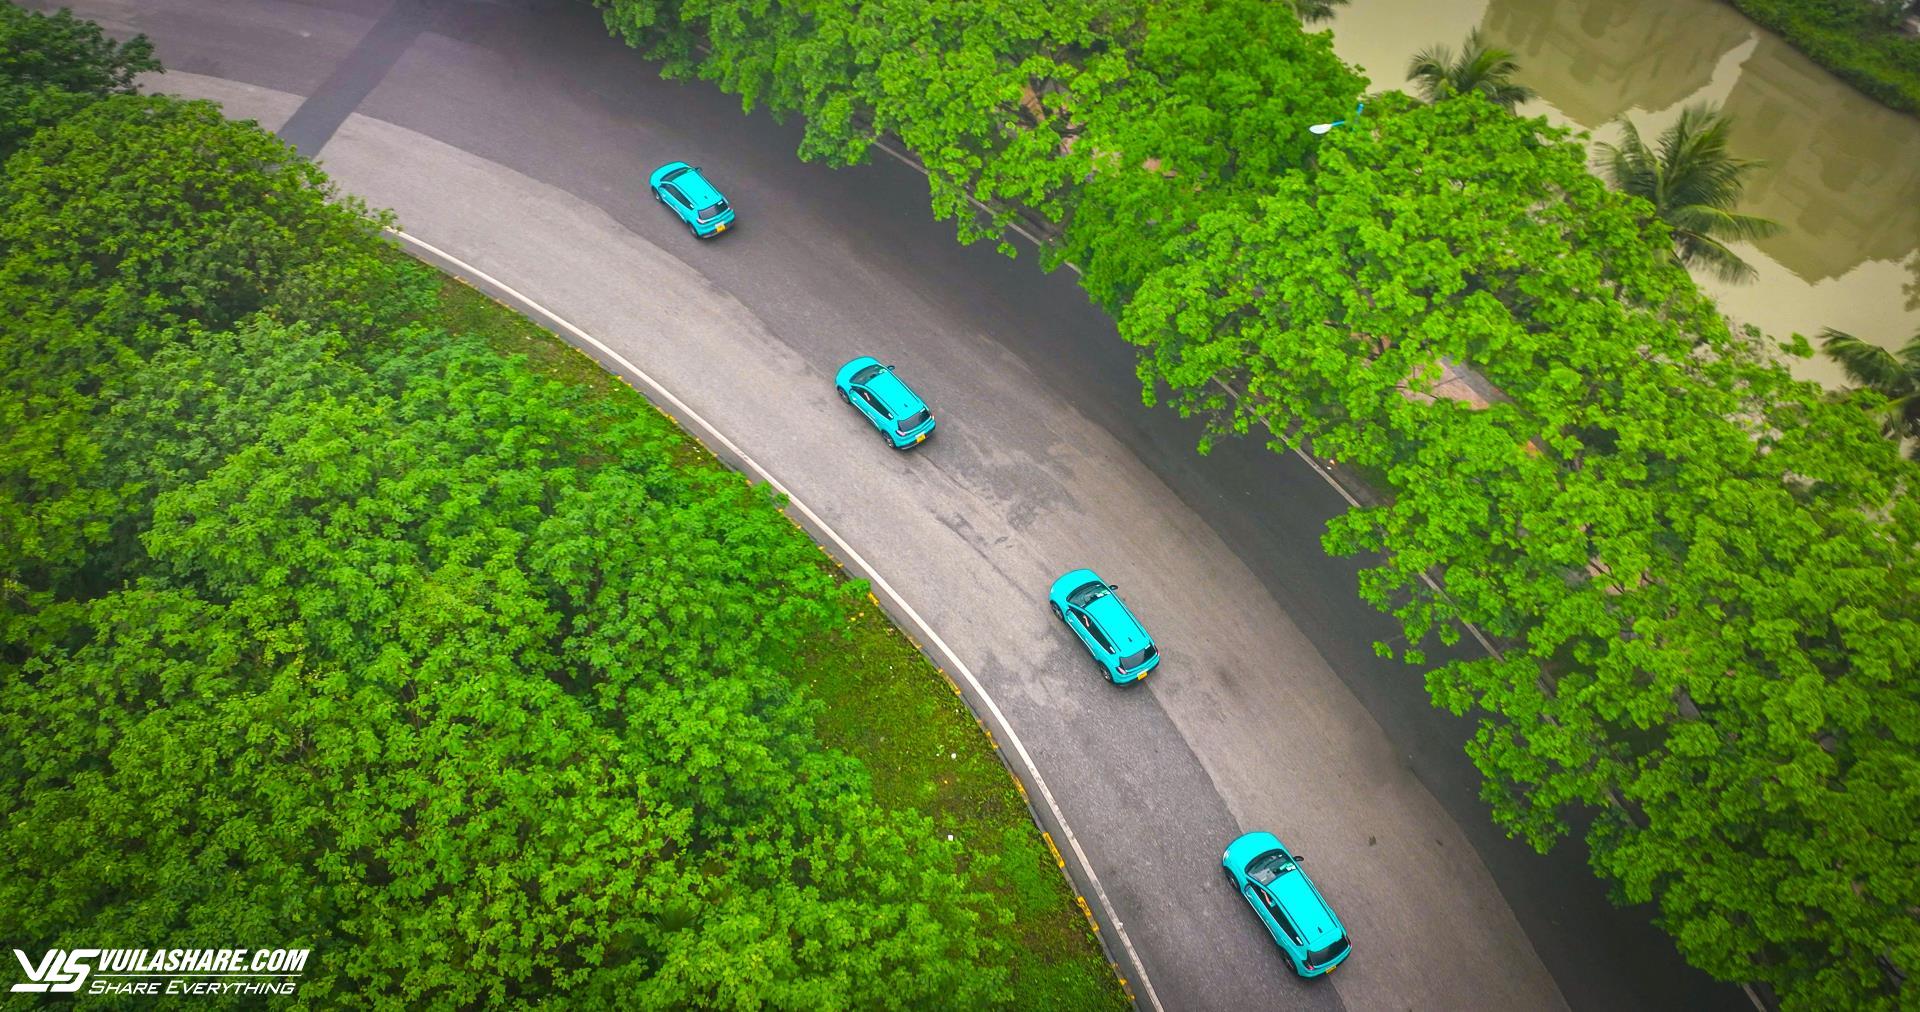 Taxi xanh GSM cam kết chia sẻ doanh thu tới 87%cho các đối tác tài xế- Ảnh 1.